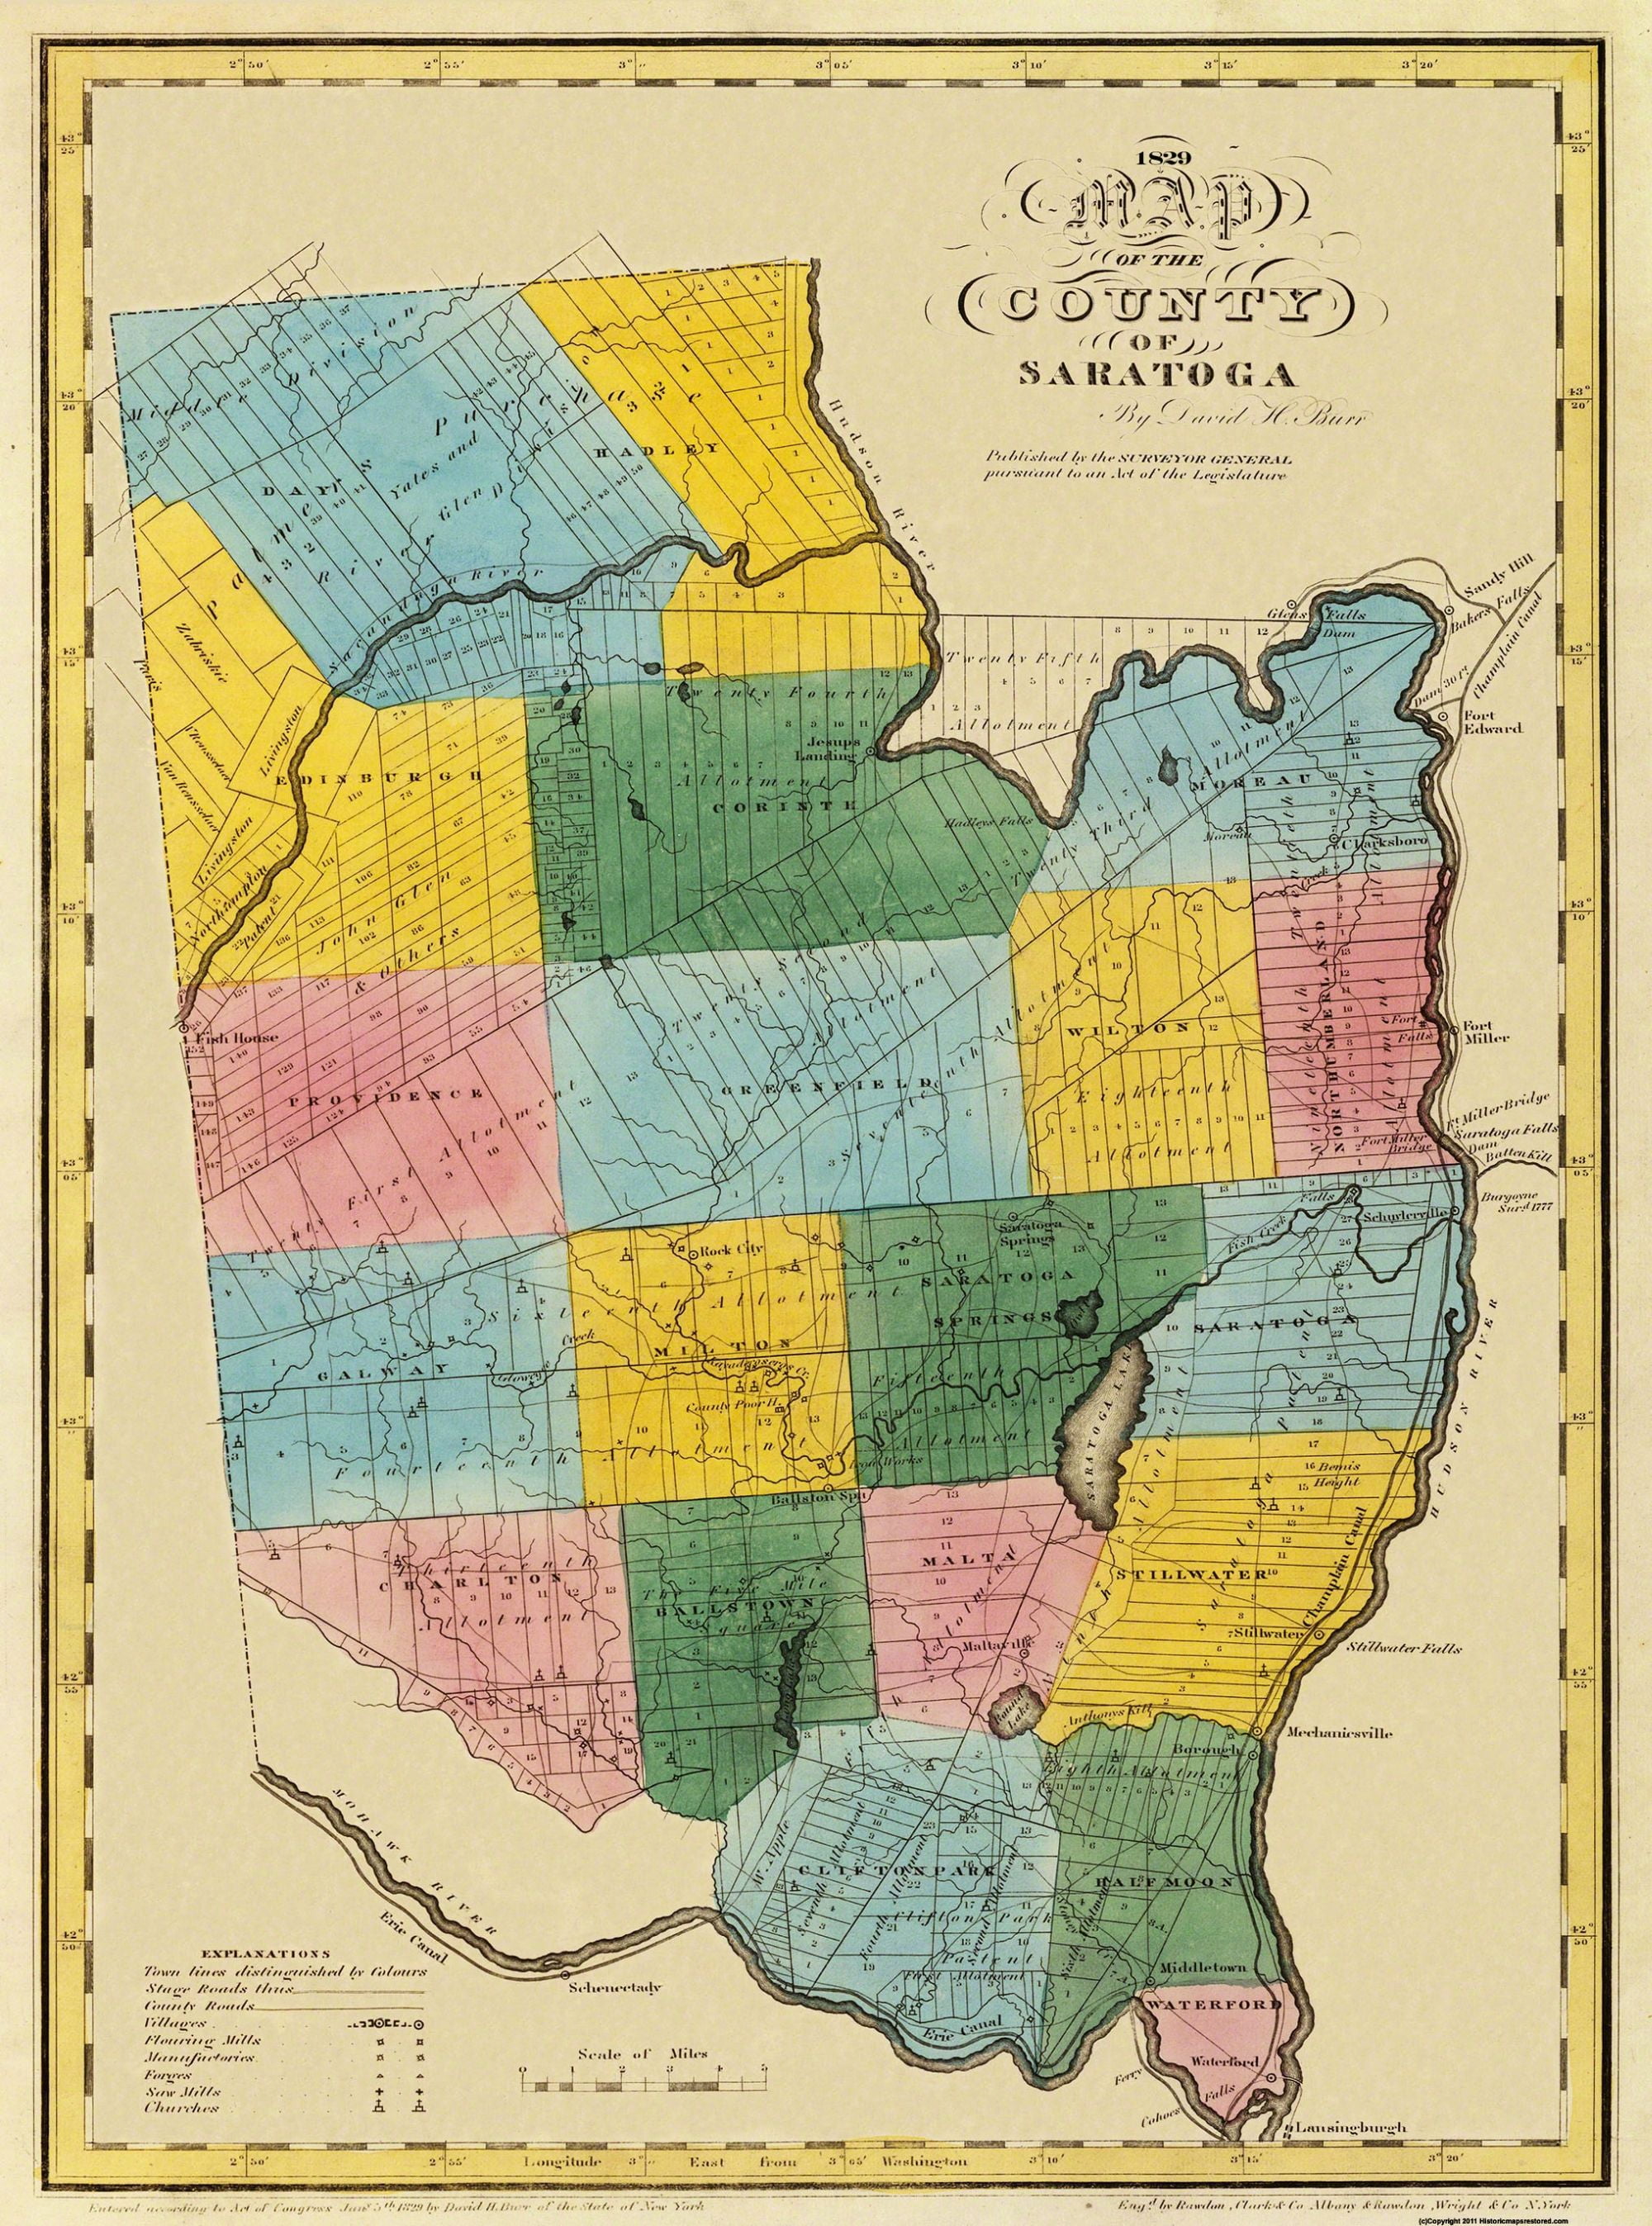 Oswego New York Burr 1866-23 x 26.86 